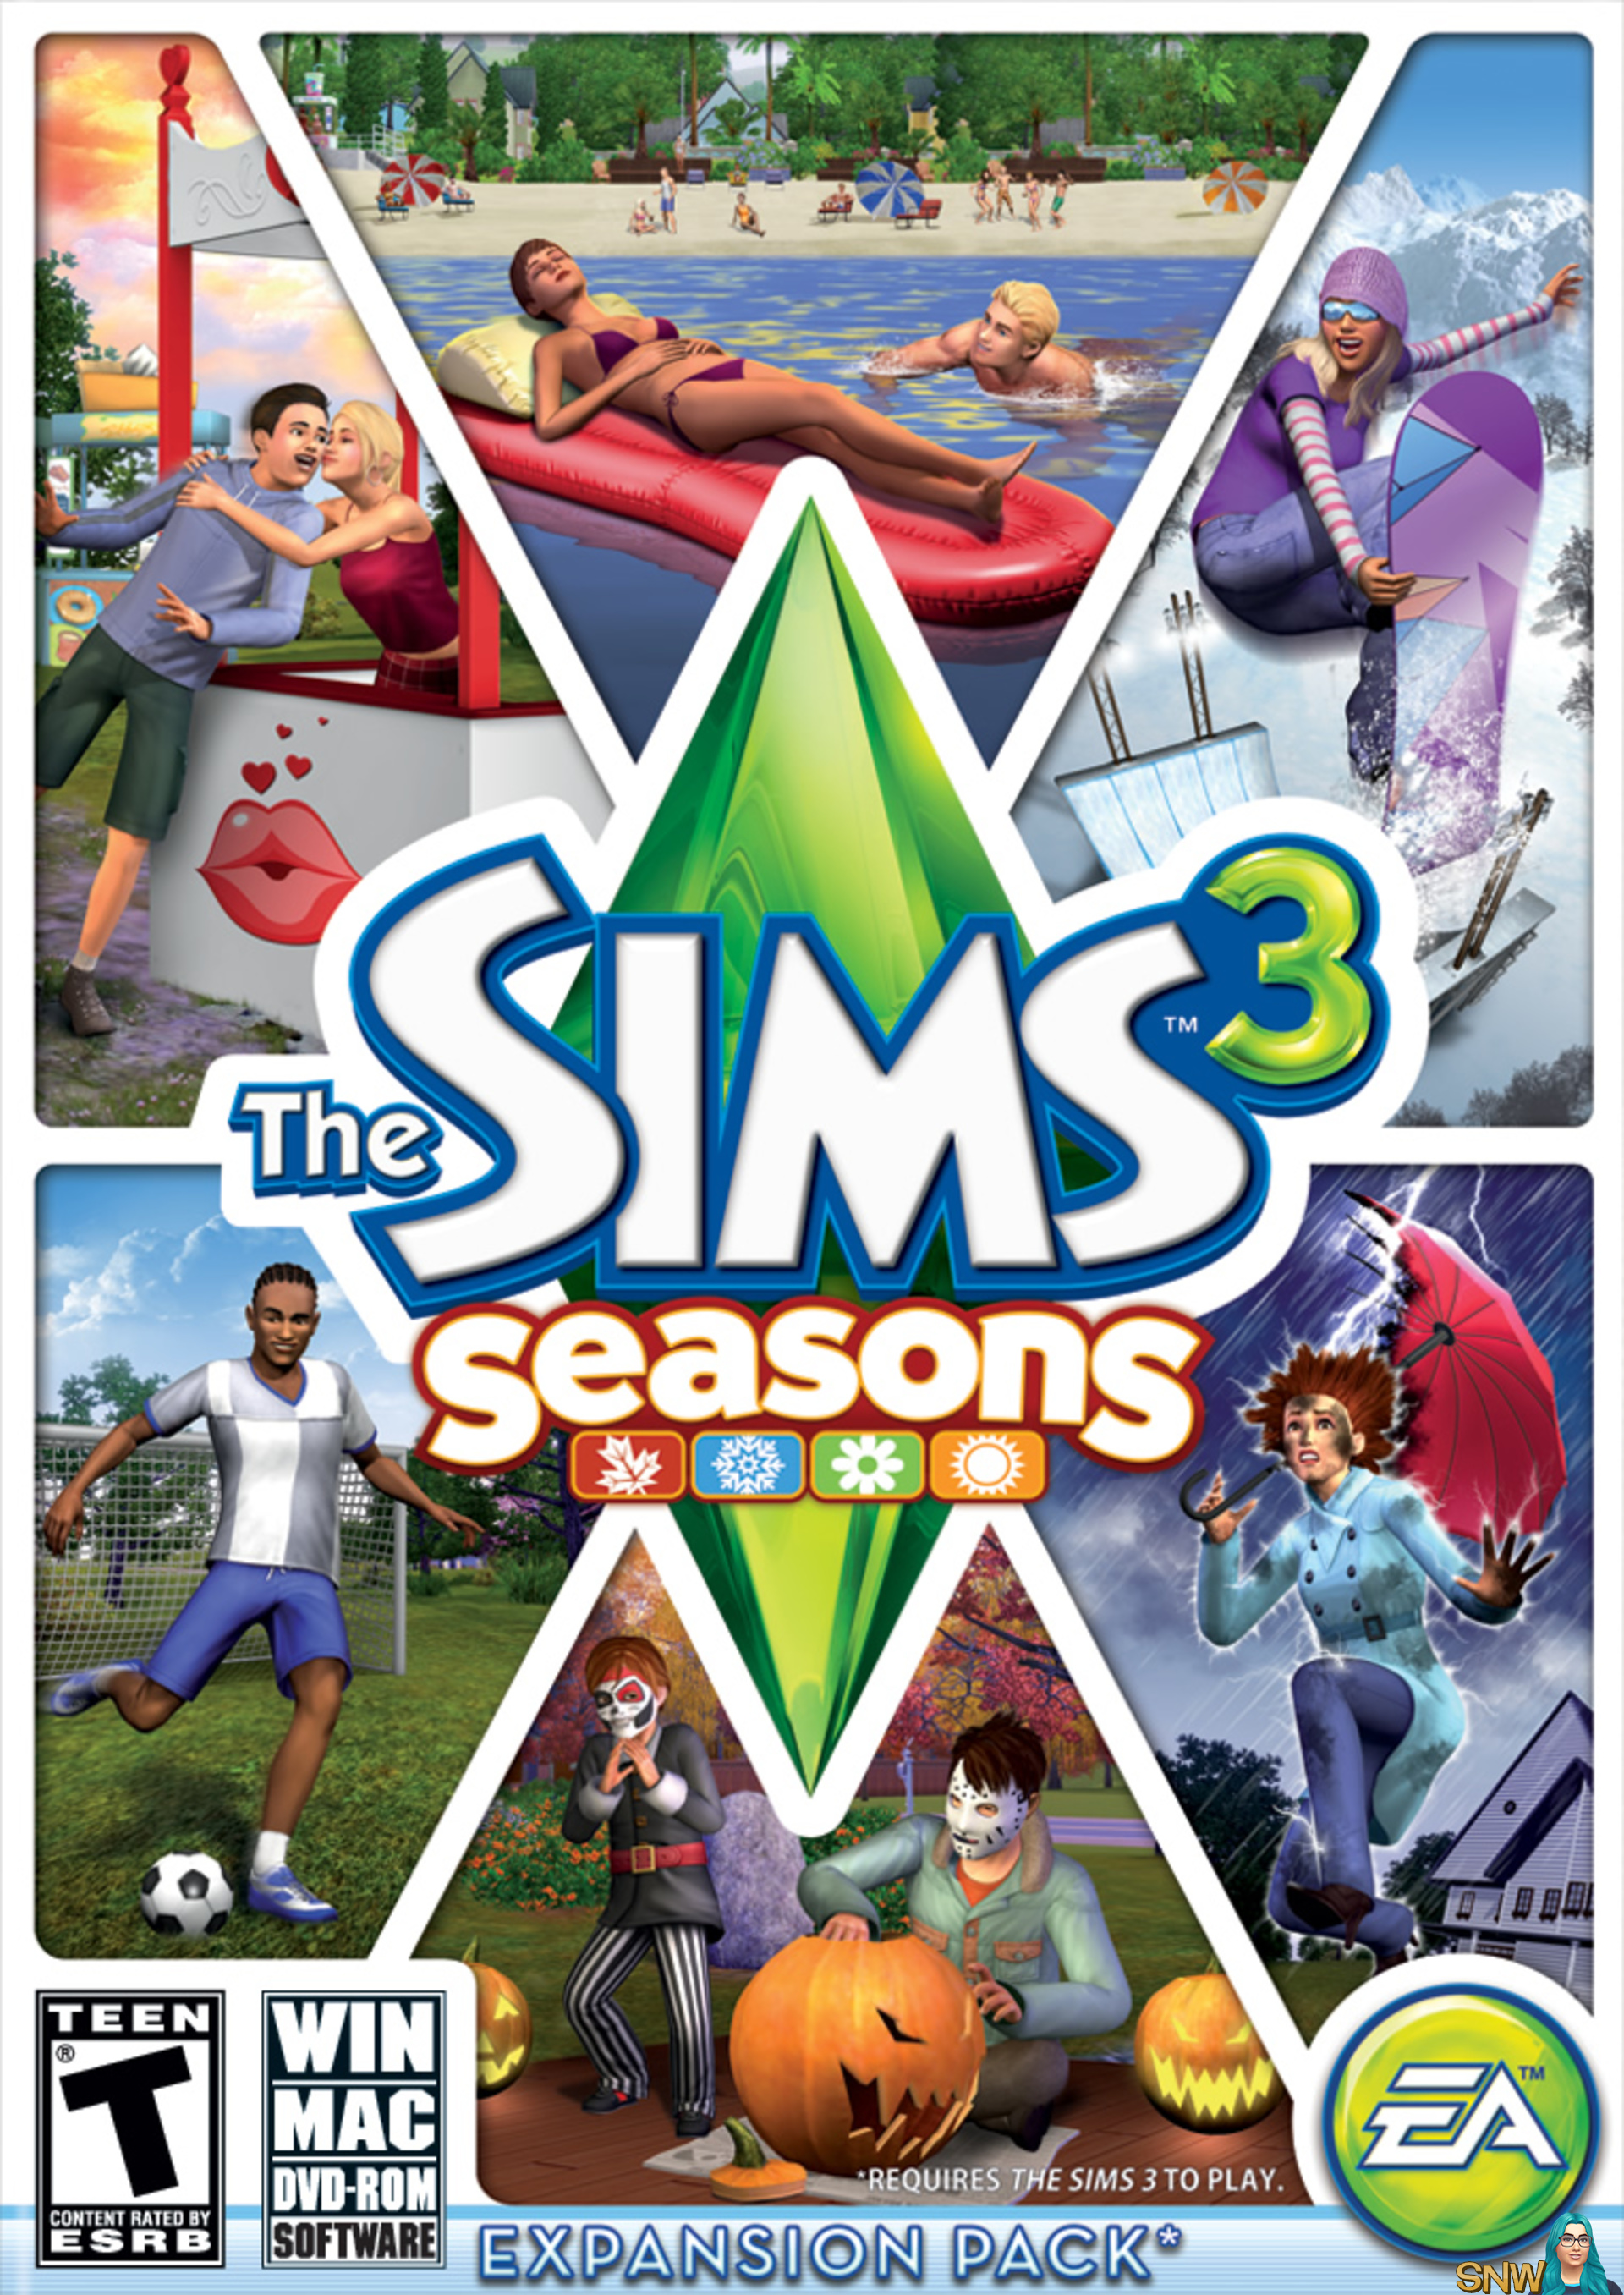 sims 4 seasons download apk